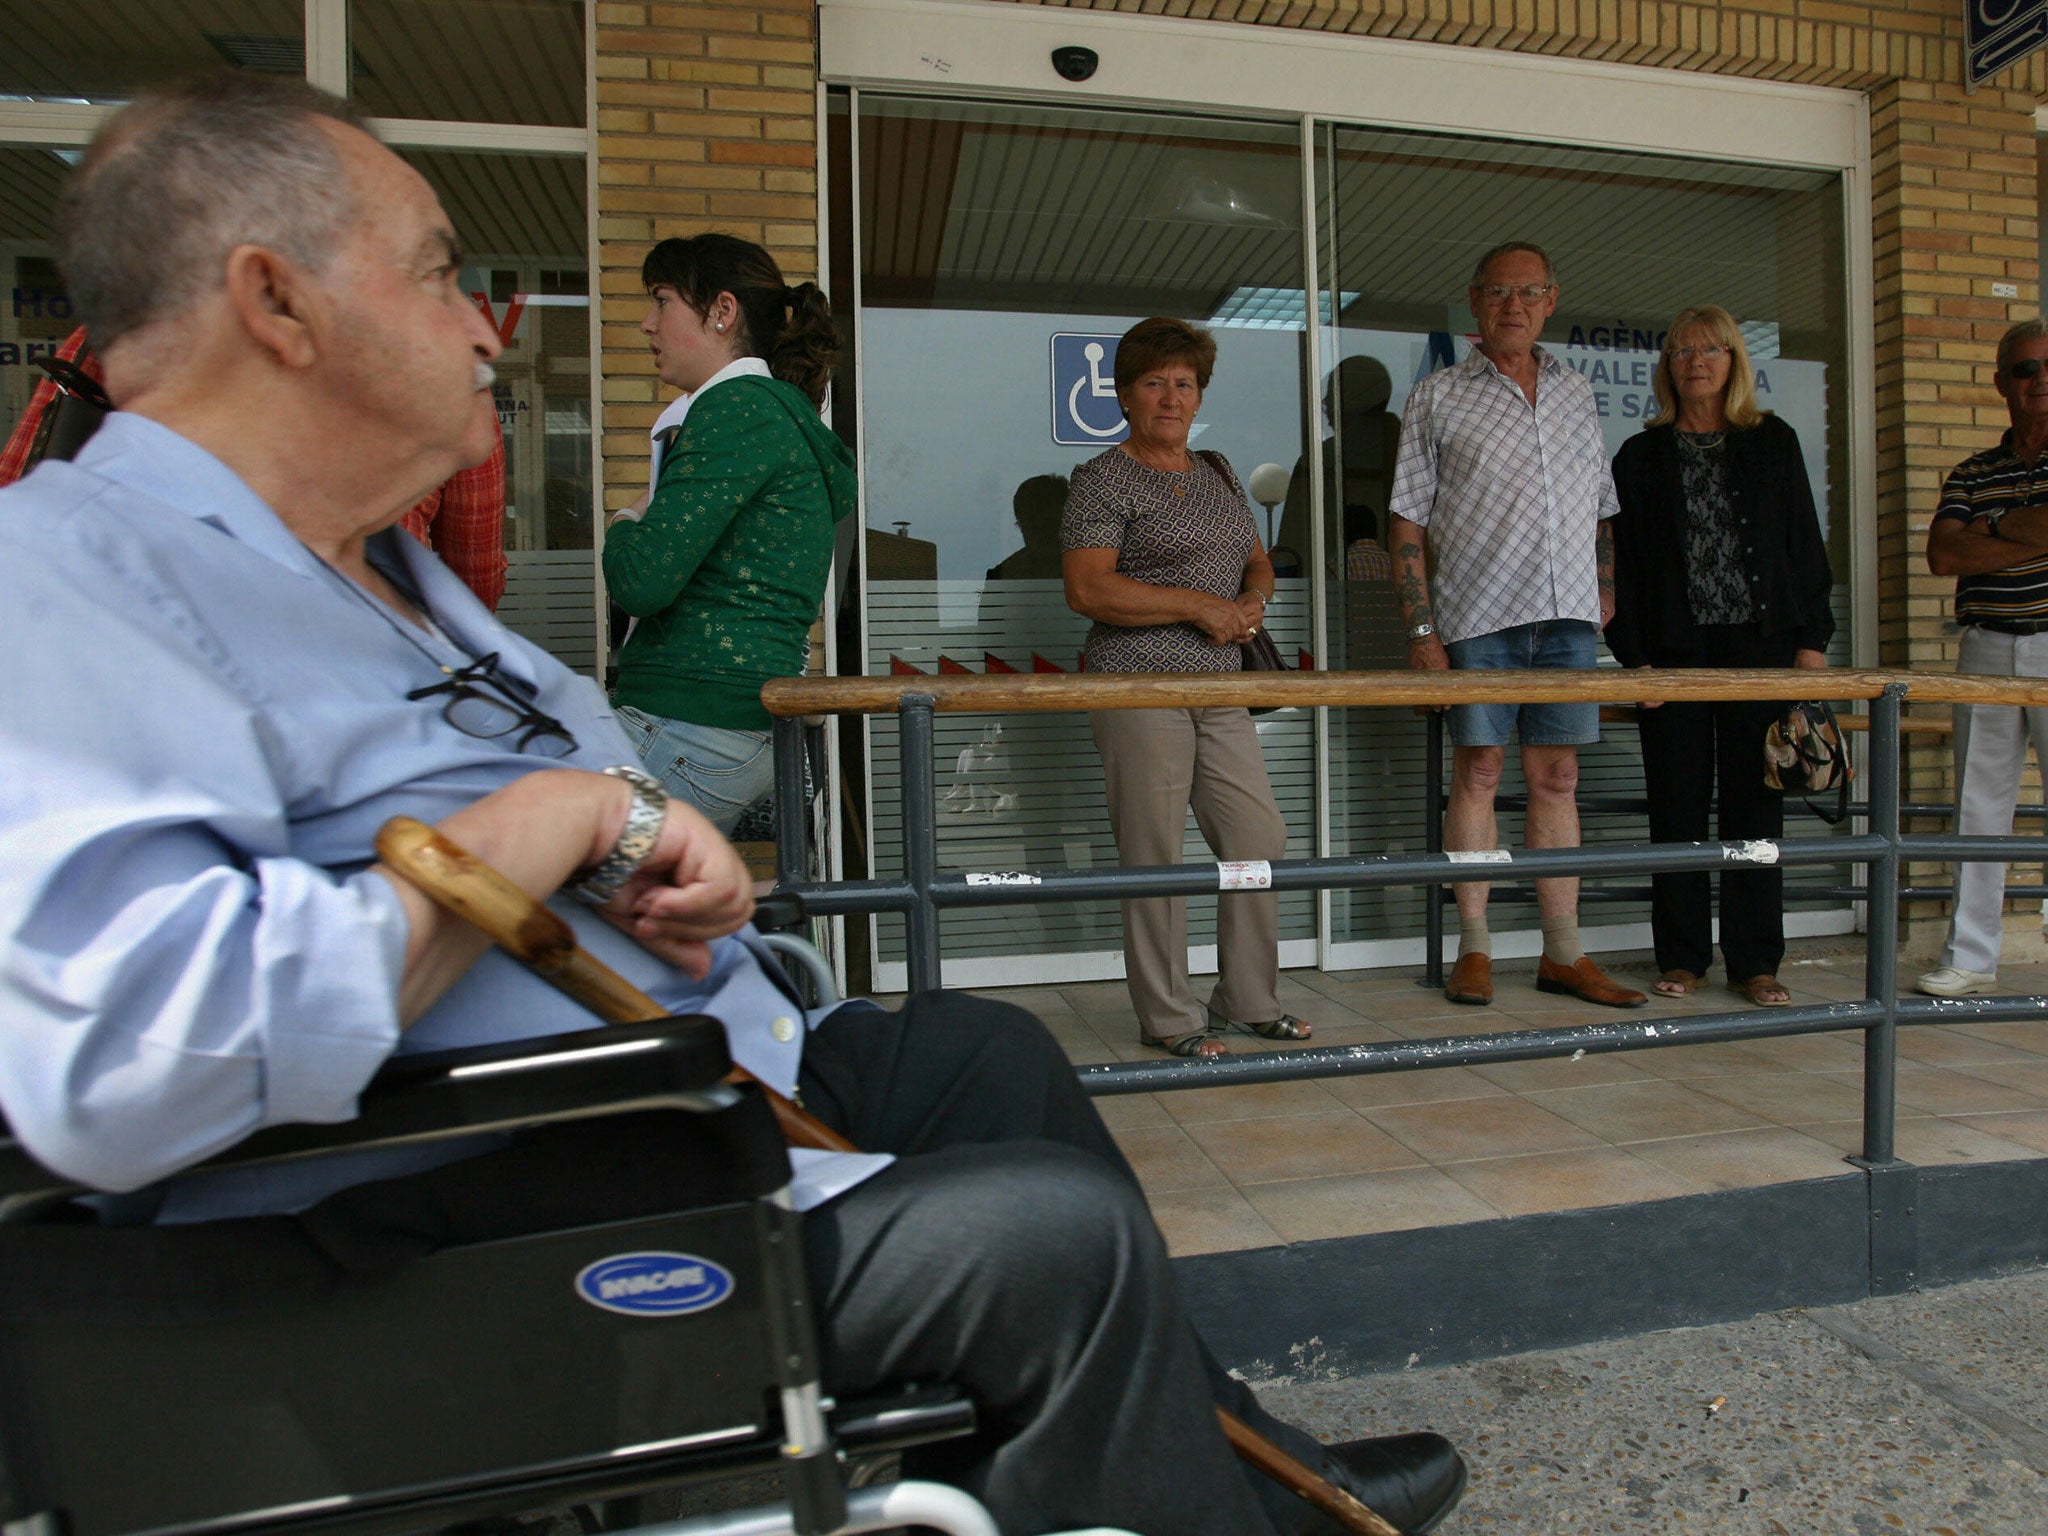 Patients outside a hospital in Benidorm, Spain